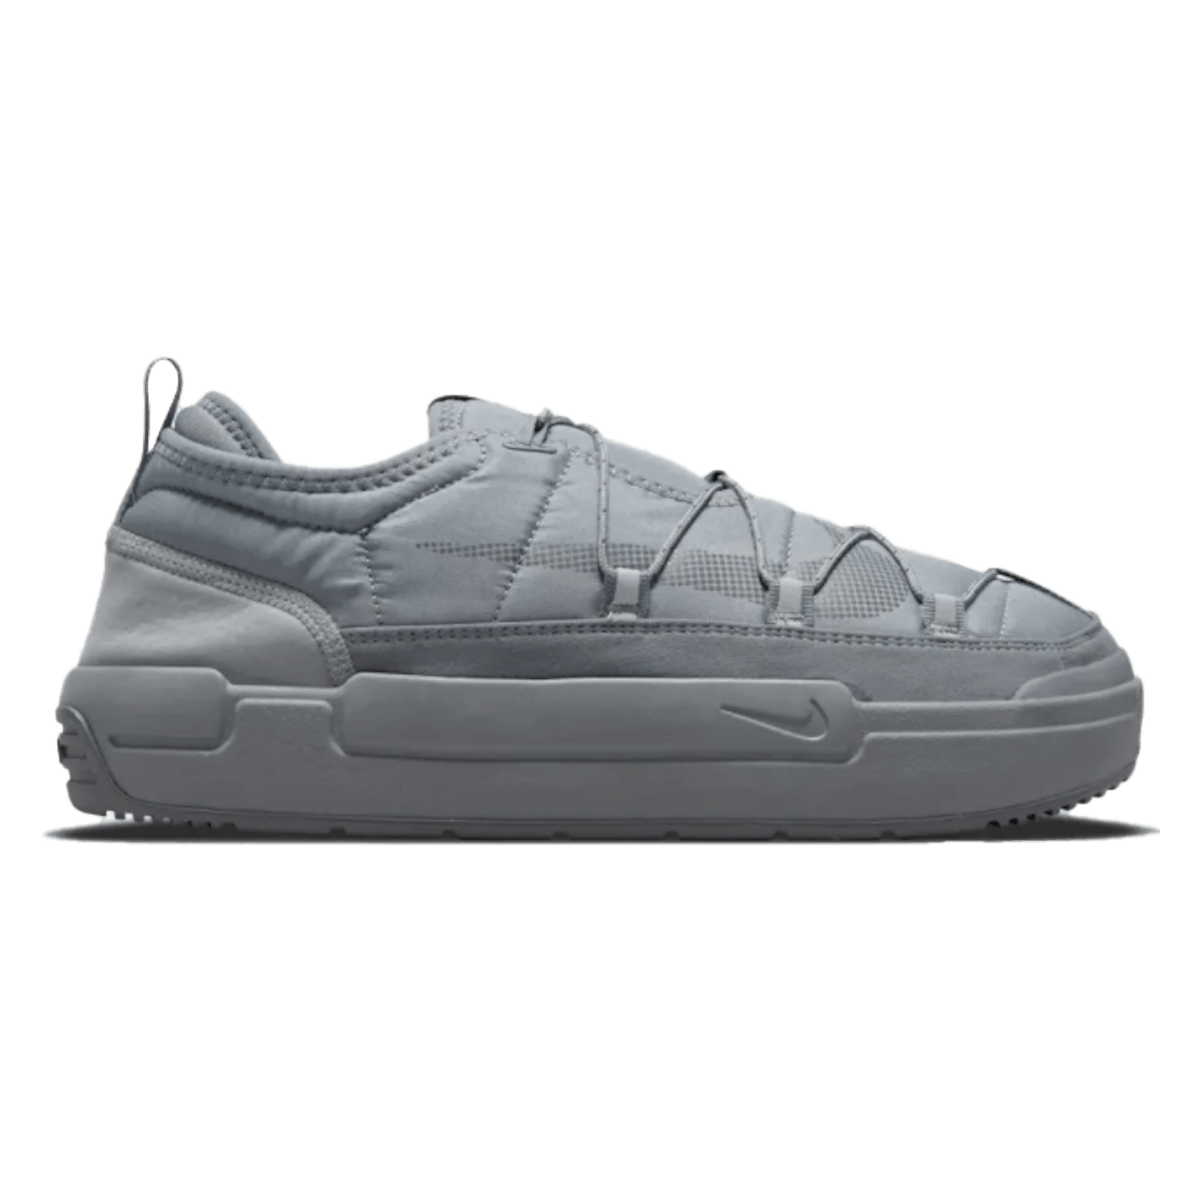 Nike Offline Pack "Cool Grey"